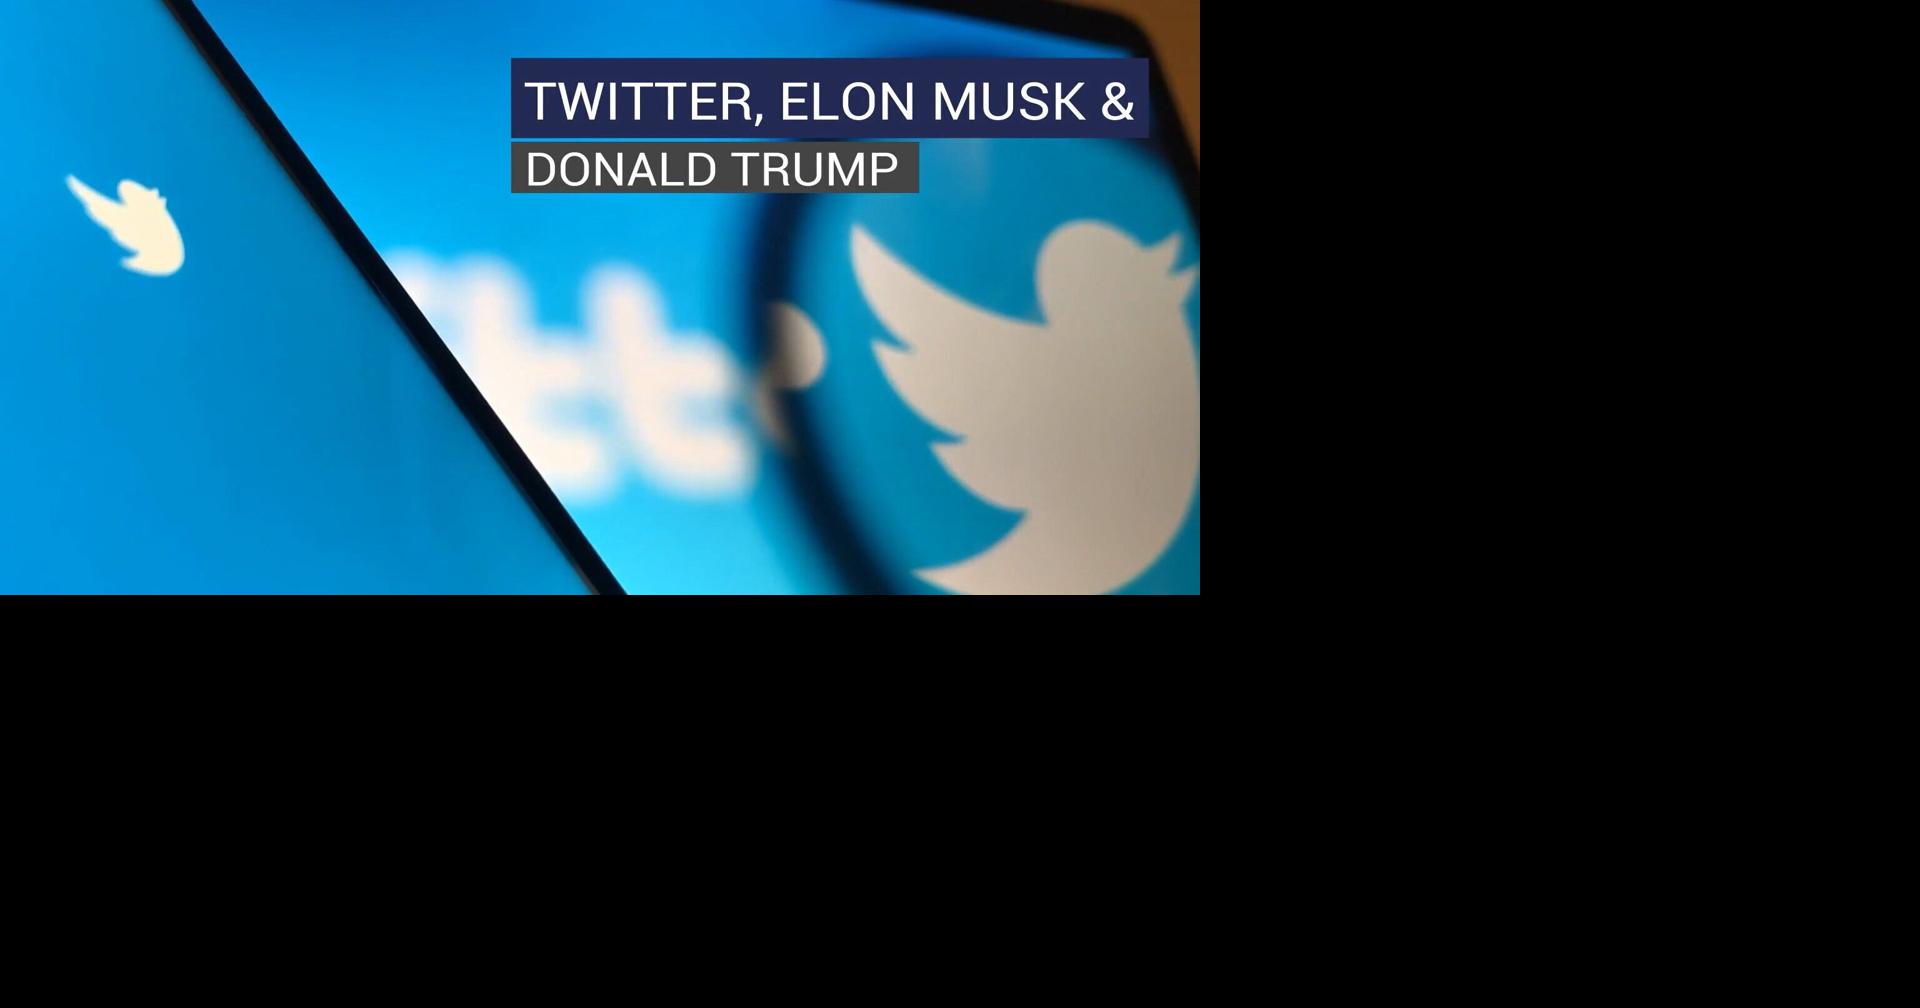 Twitter, Elon Musk & Donald Trump